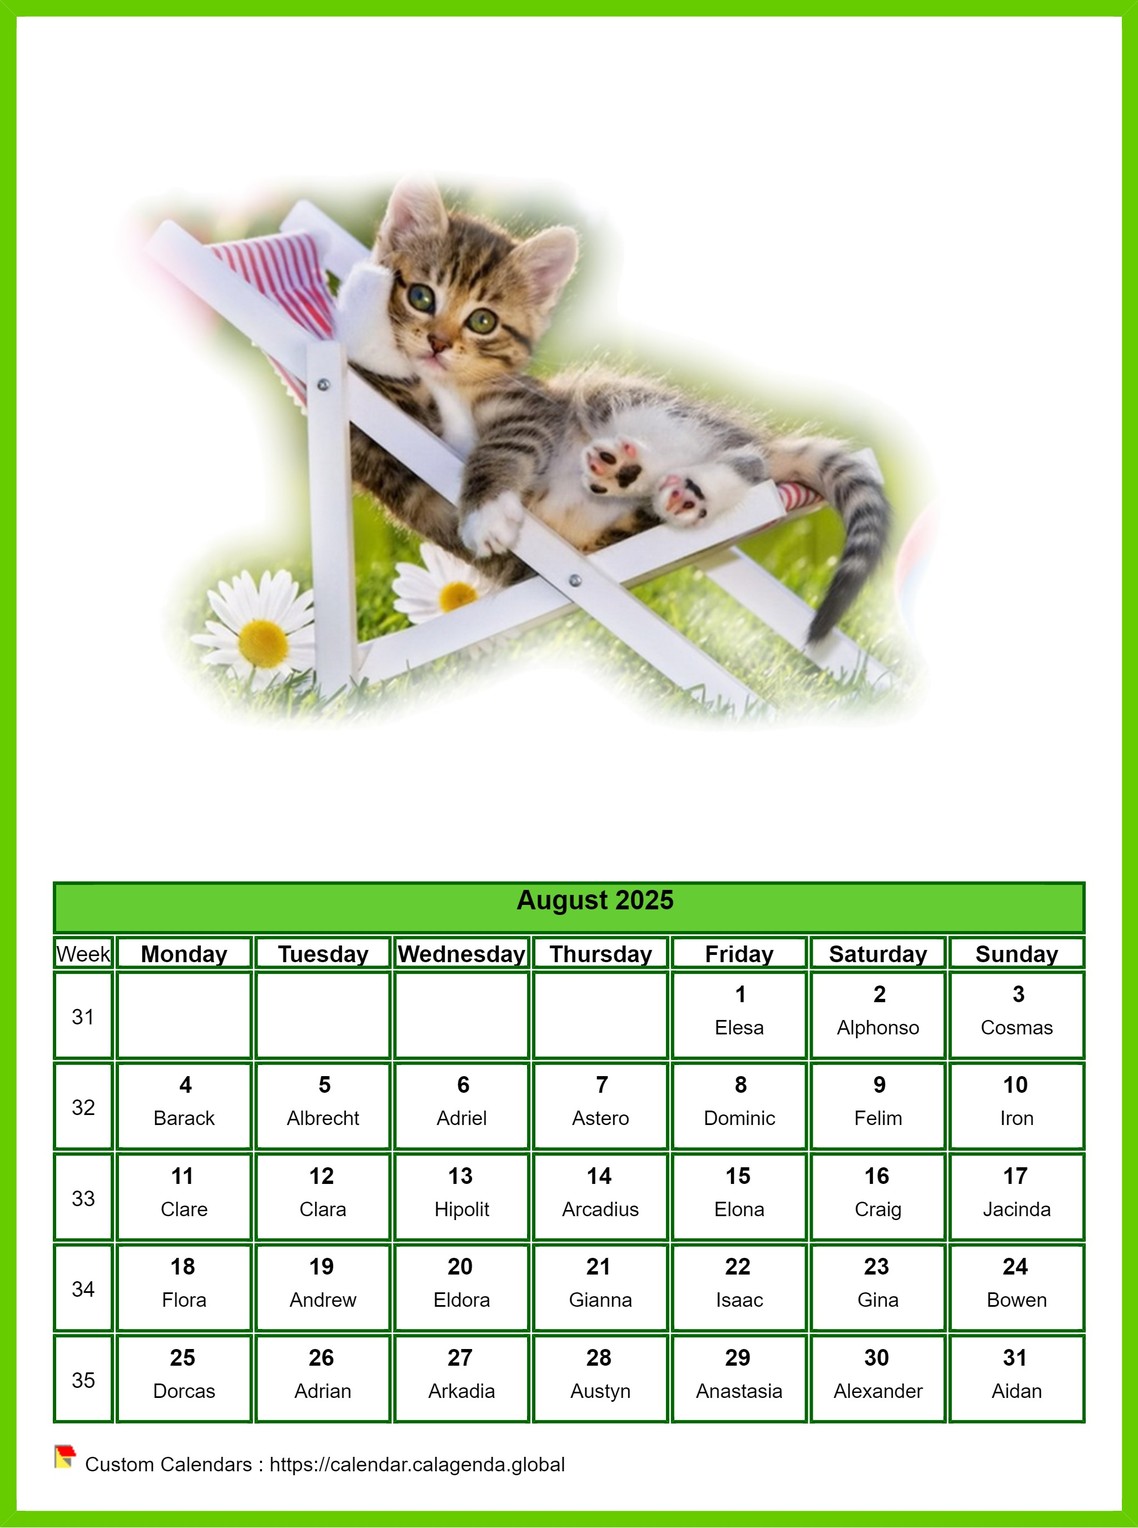 Calendar August 2025 cats